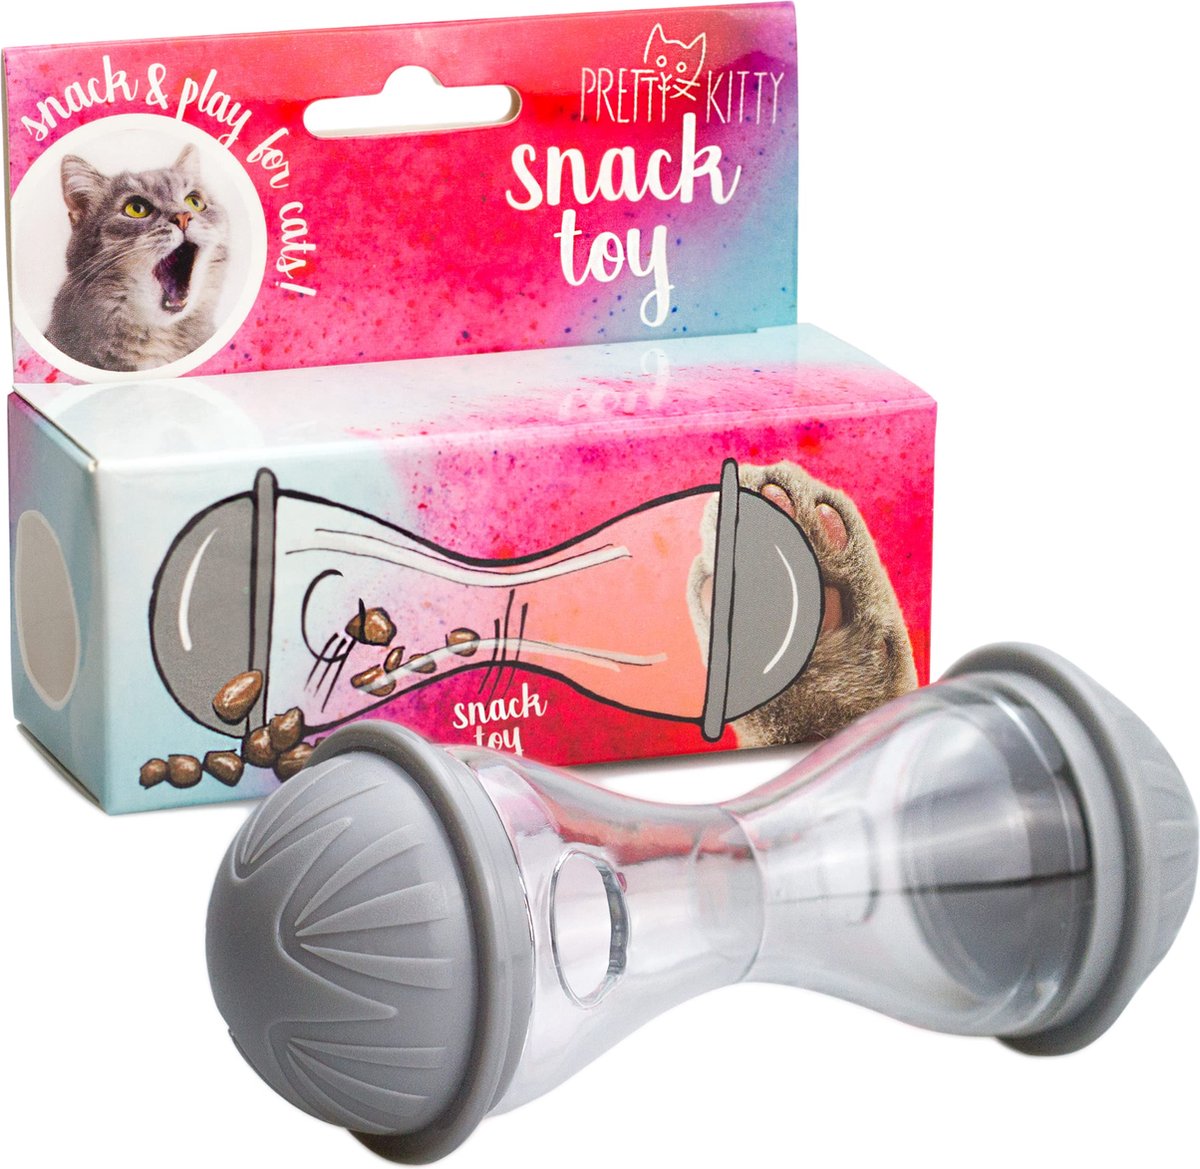 PRETTY KITTY Cat Food Toy: Premium Snack Dispenser en Voedselbal als Intelligentie Speelgoed voor Katten - Kleine Voerbak voor Cat Treats - Speelgoed Kat - Treat Feeder